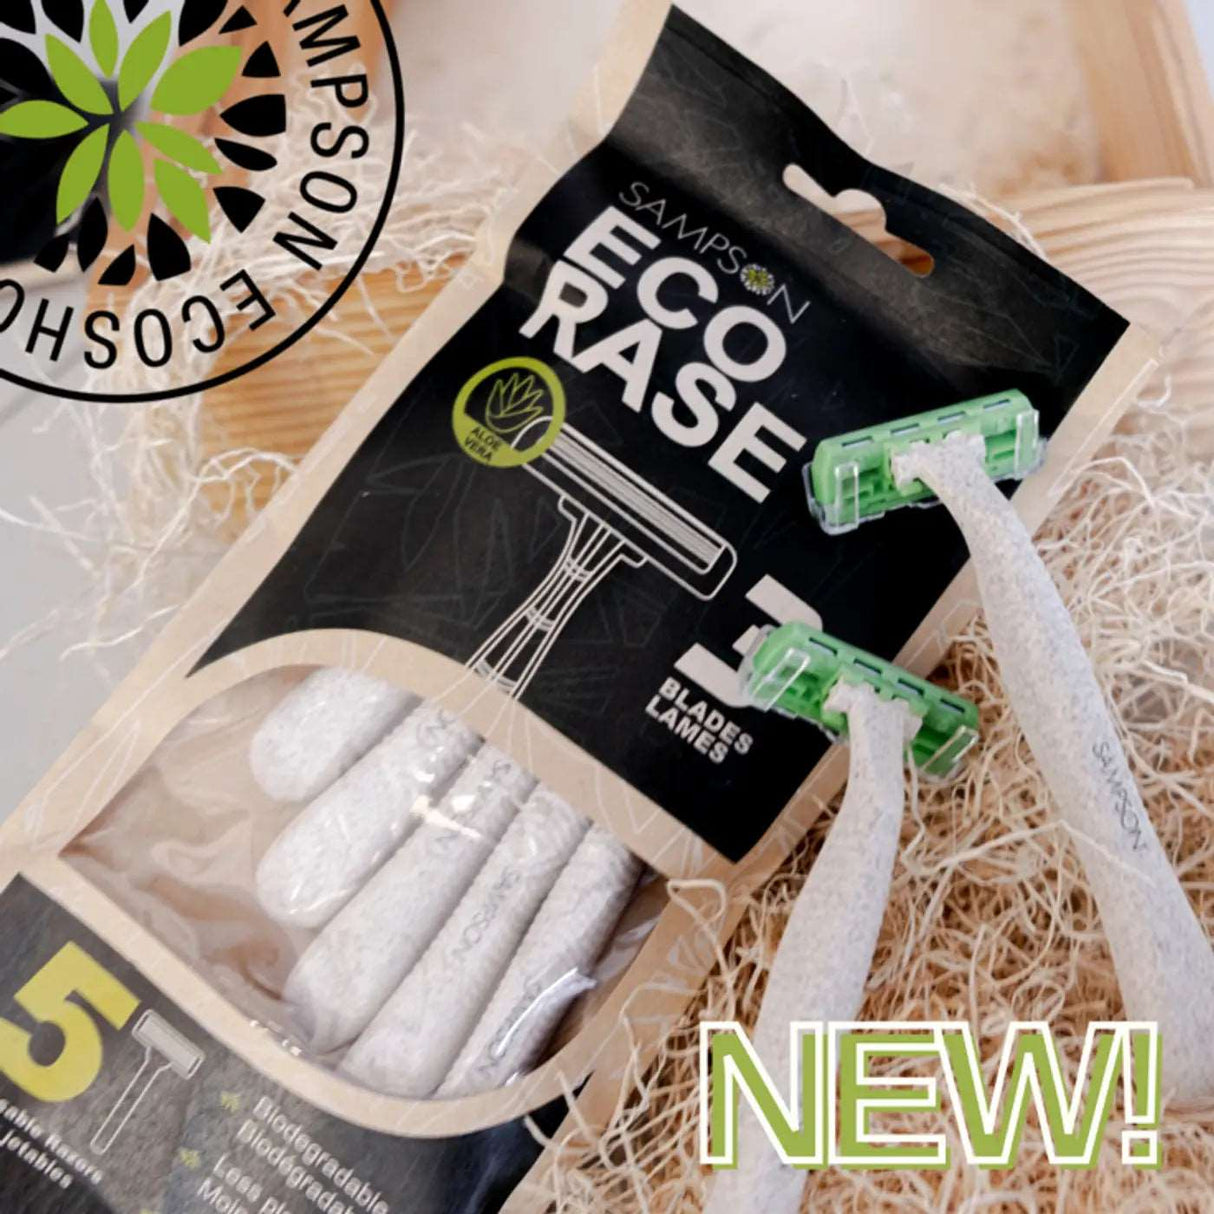 Ecorase Biodegradable Razors - 5 Pack